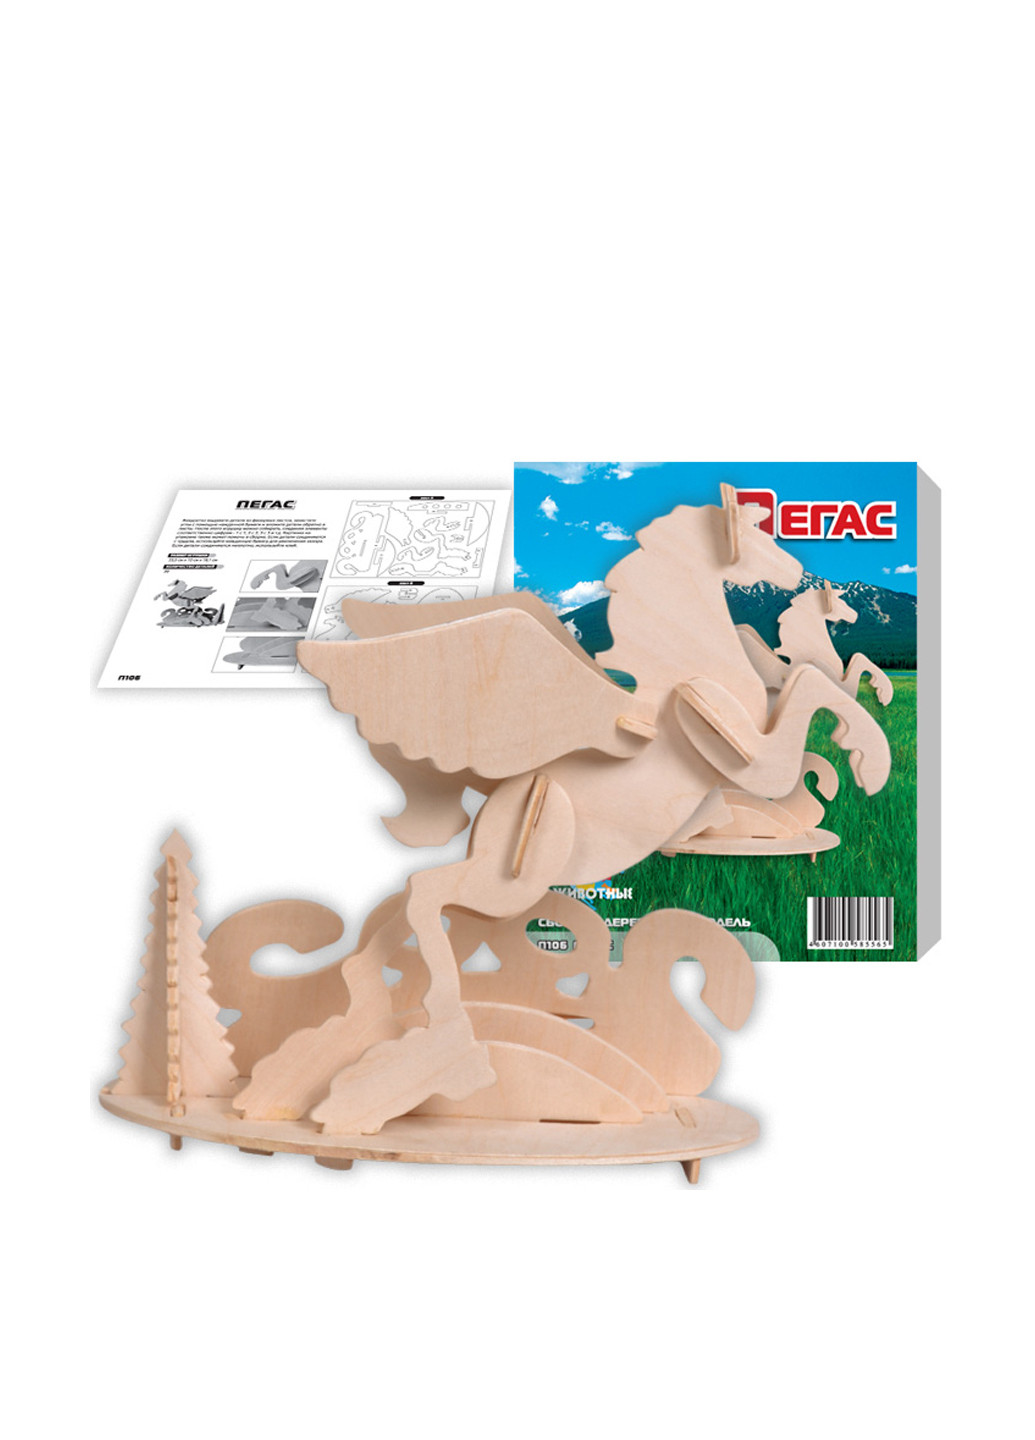 Дерев'яна іграшка Пегас, 24x10x19 см Игрушки из дерева (81043360)